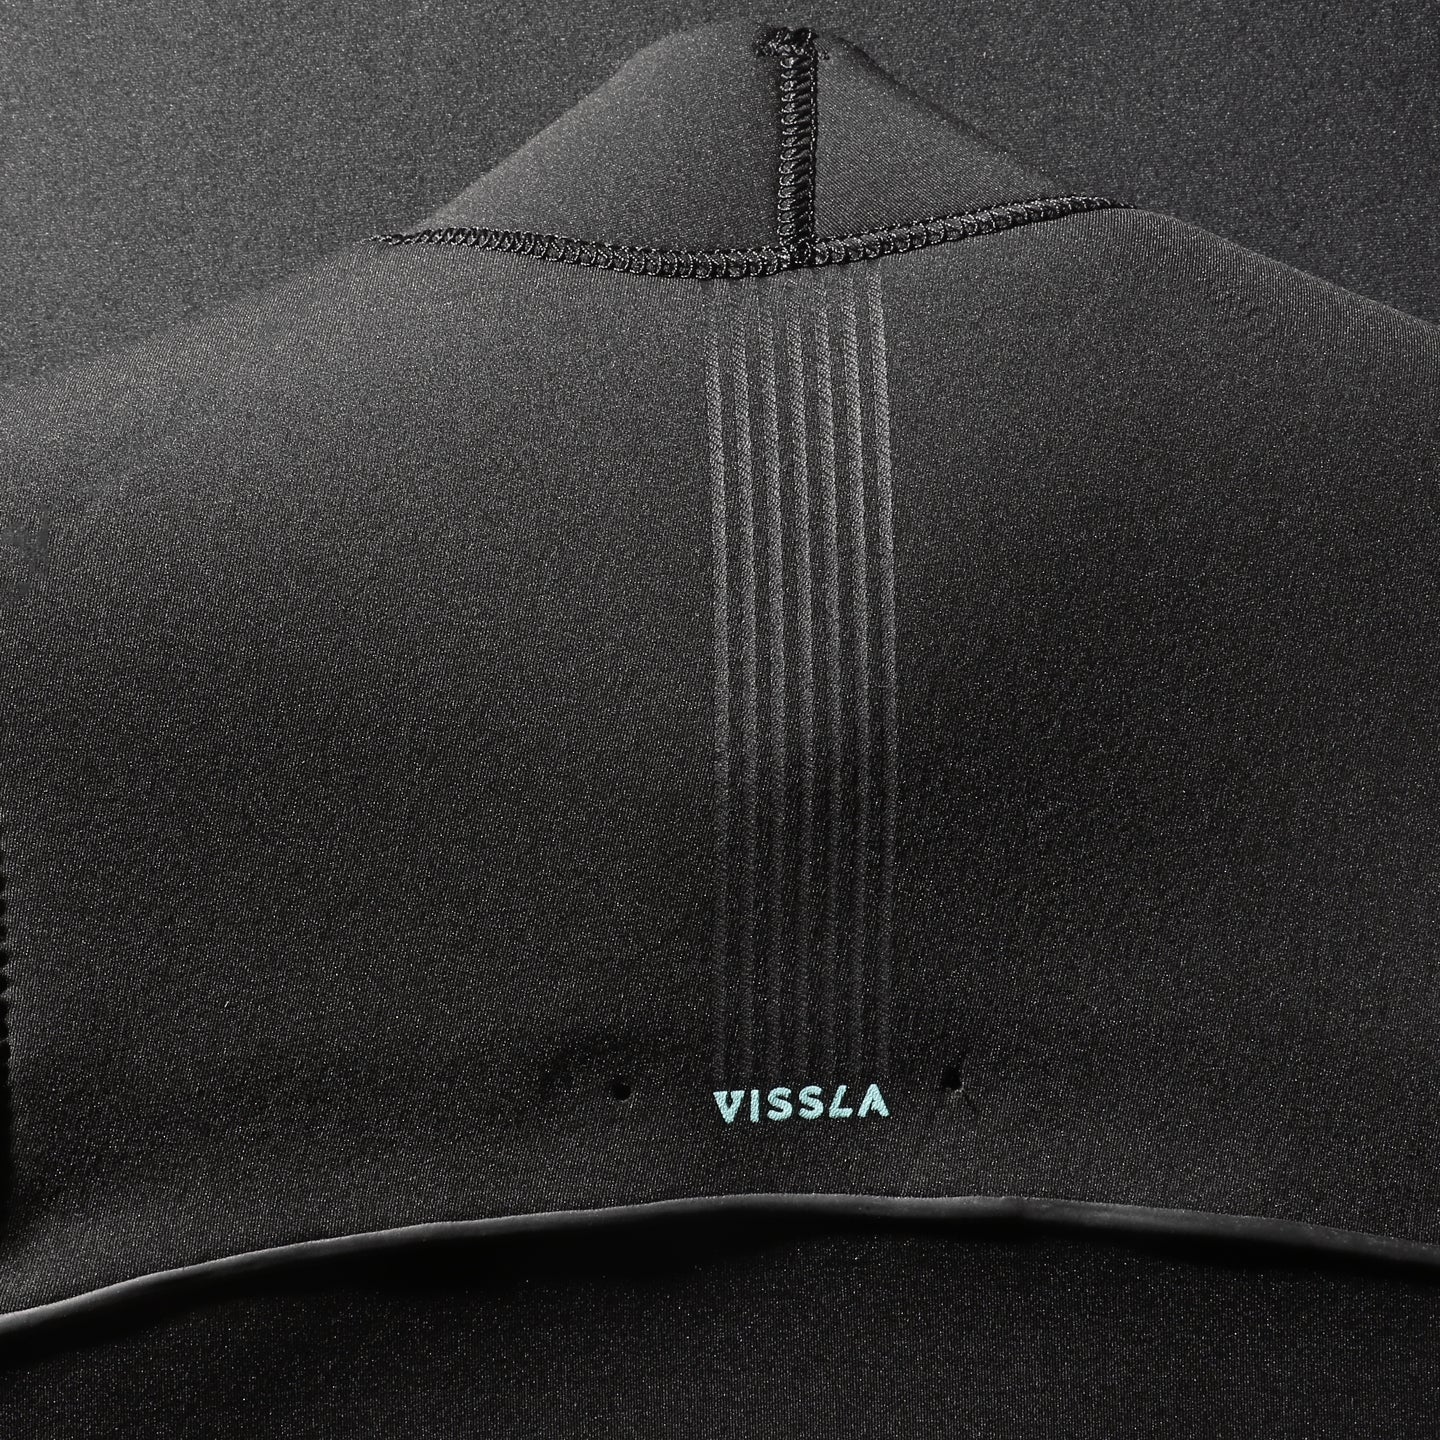 Vissla North Seas 3/2 Full Suit Black